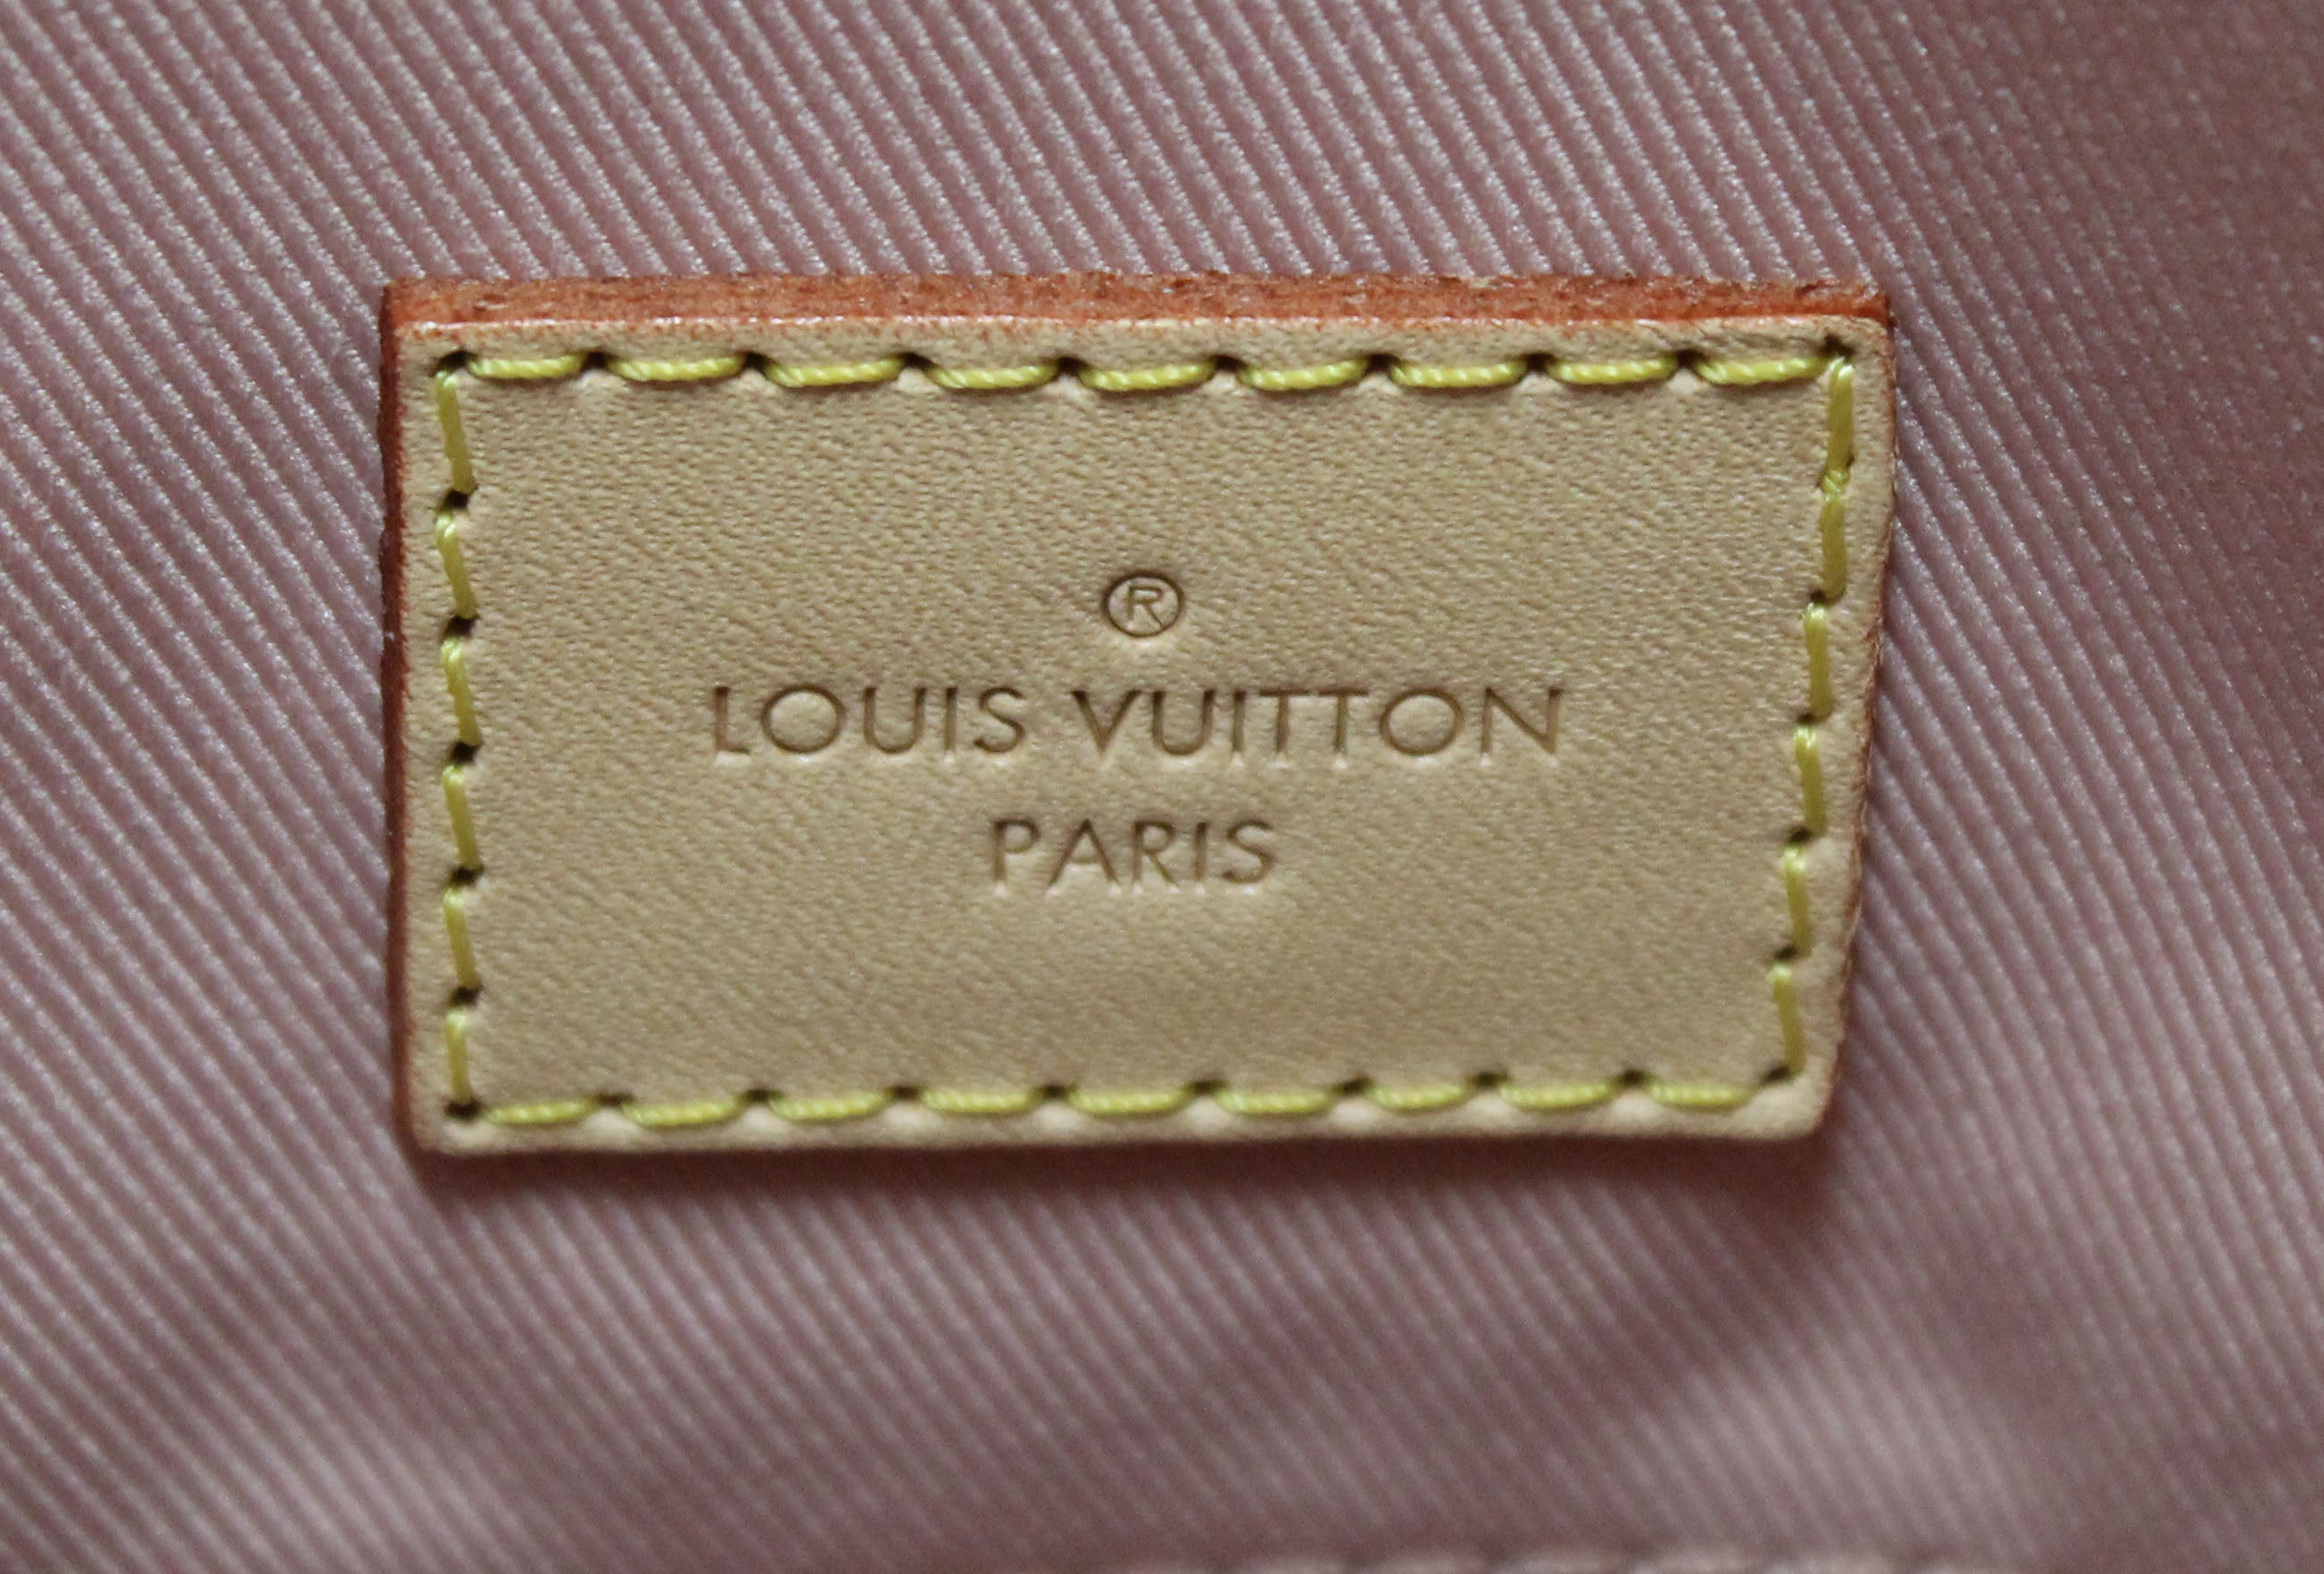 Authentic NEW Louis Vuitton Damier Azur Graceful MM Hobo Shoulder Bag